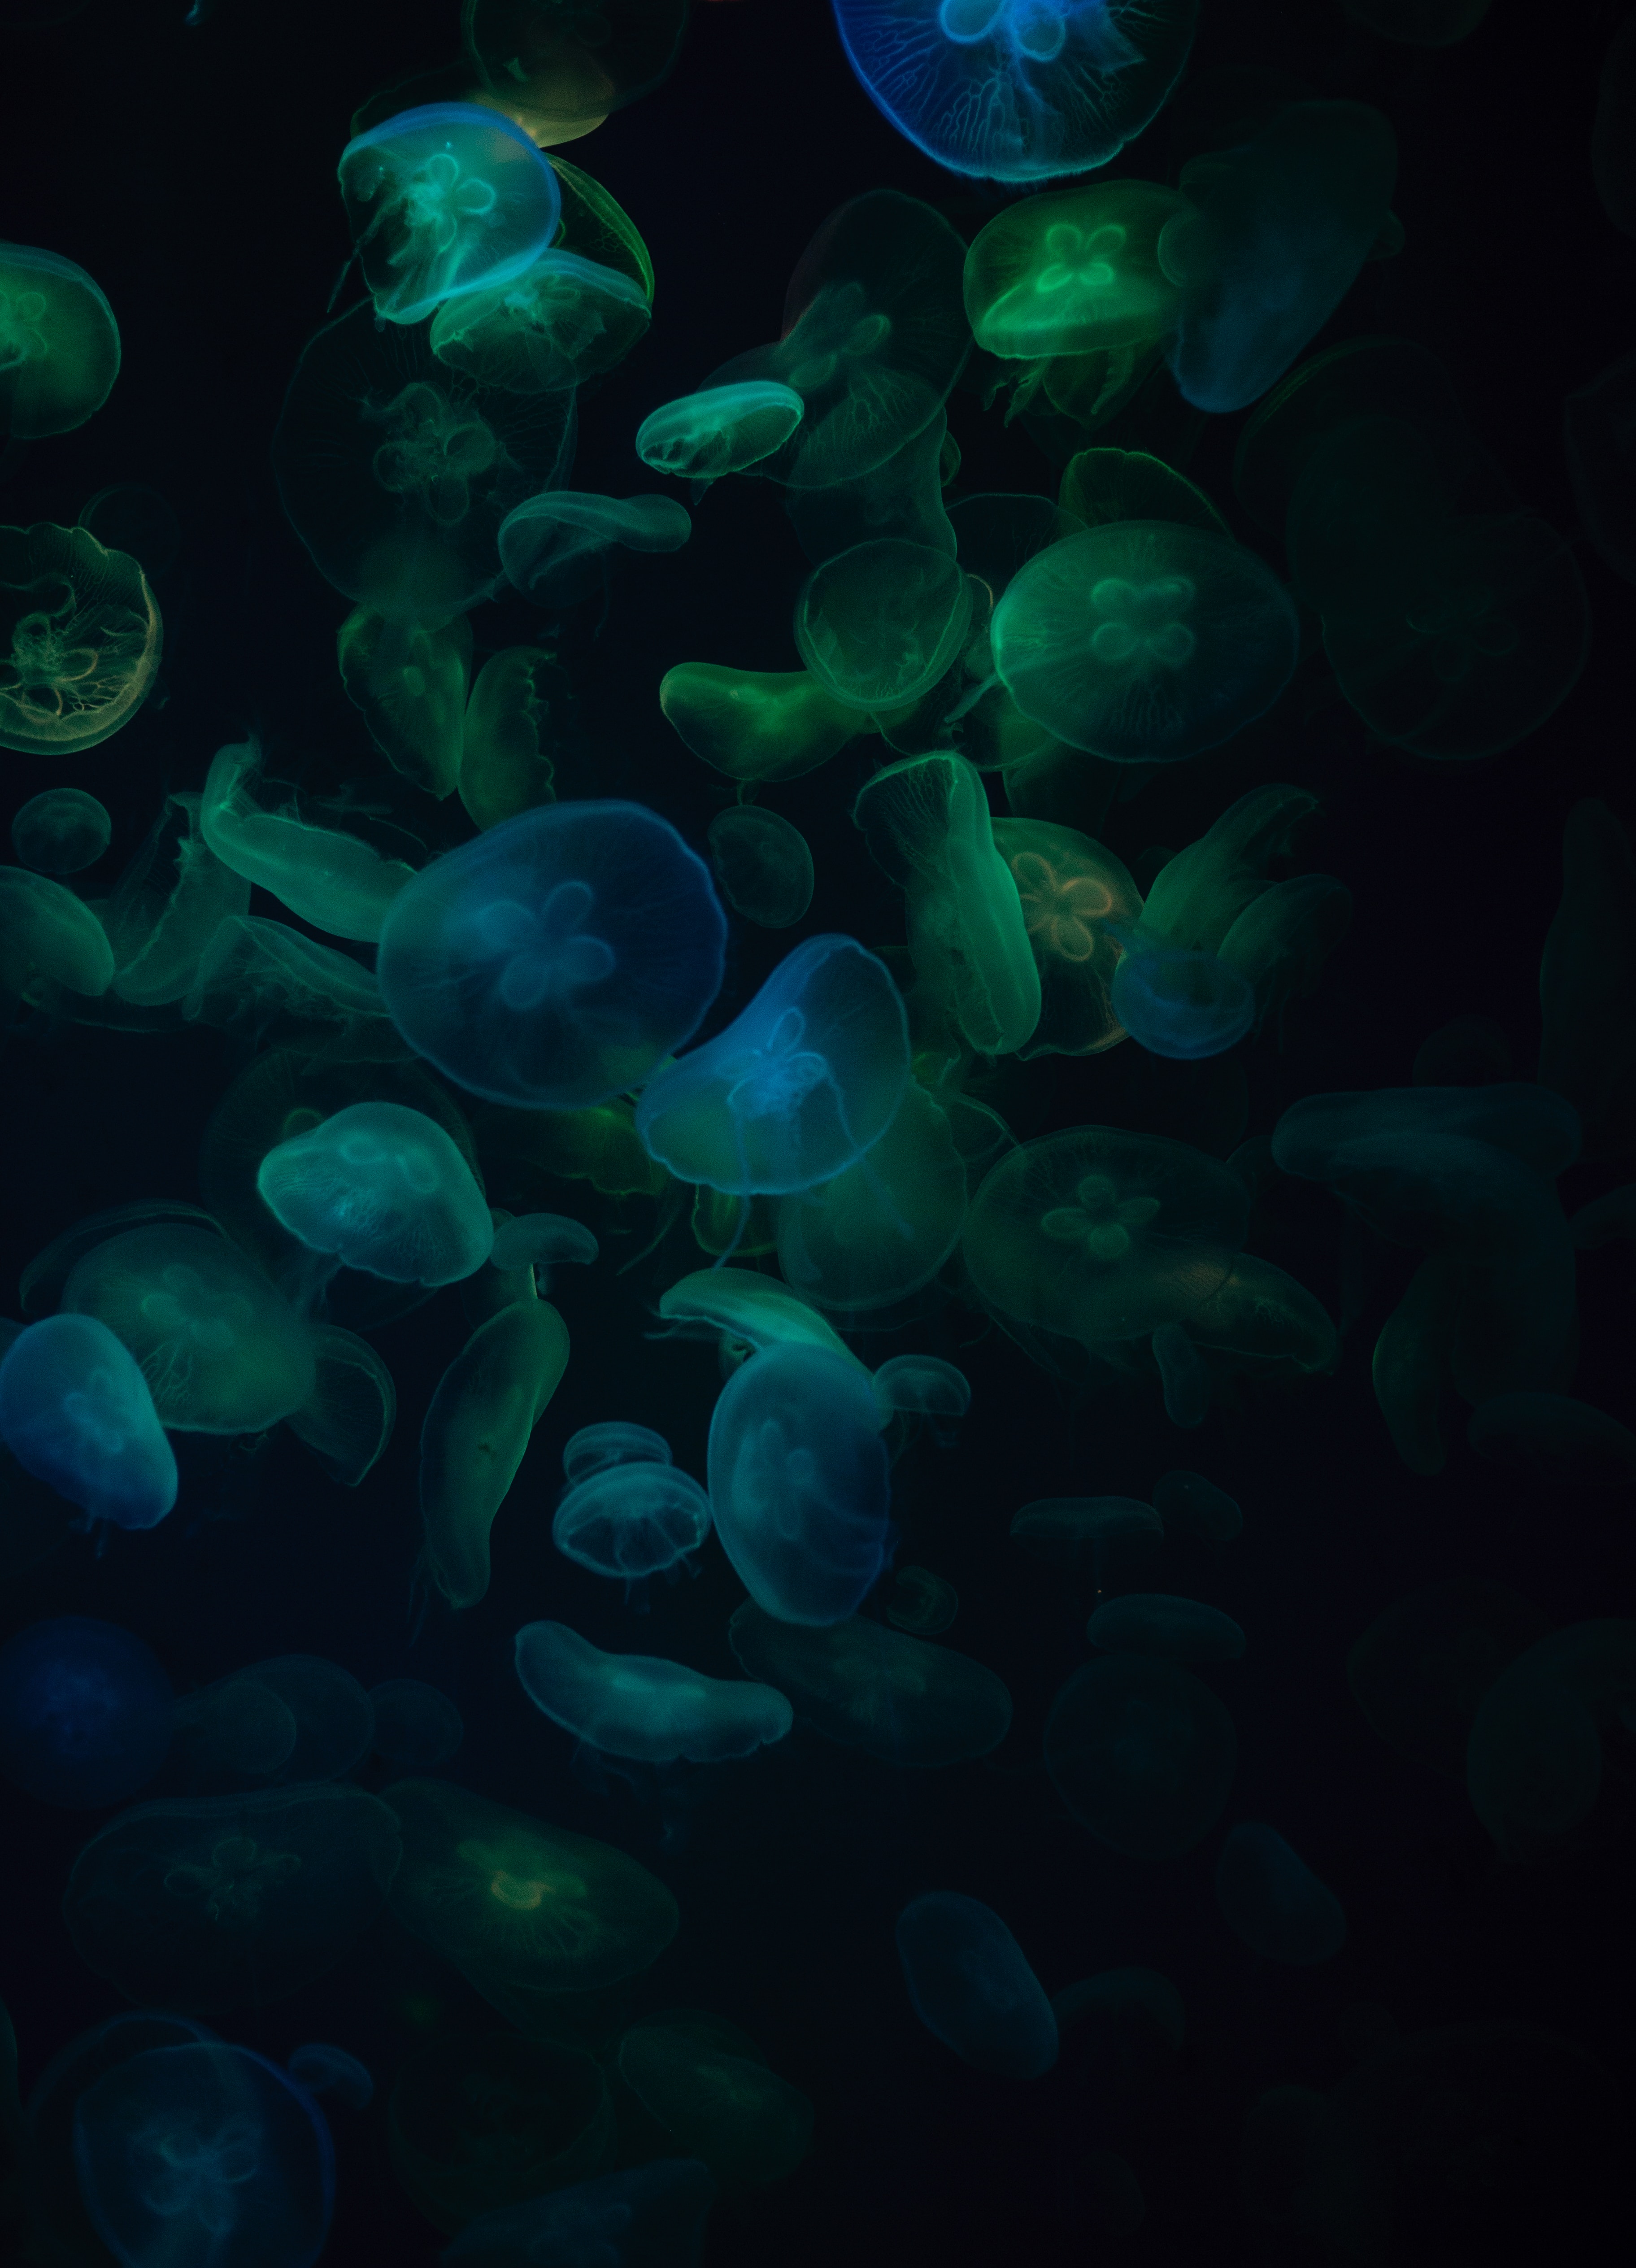 Free Images transparent, animals, jellyfish, dark Underwater World